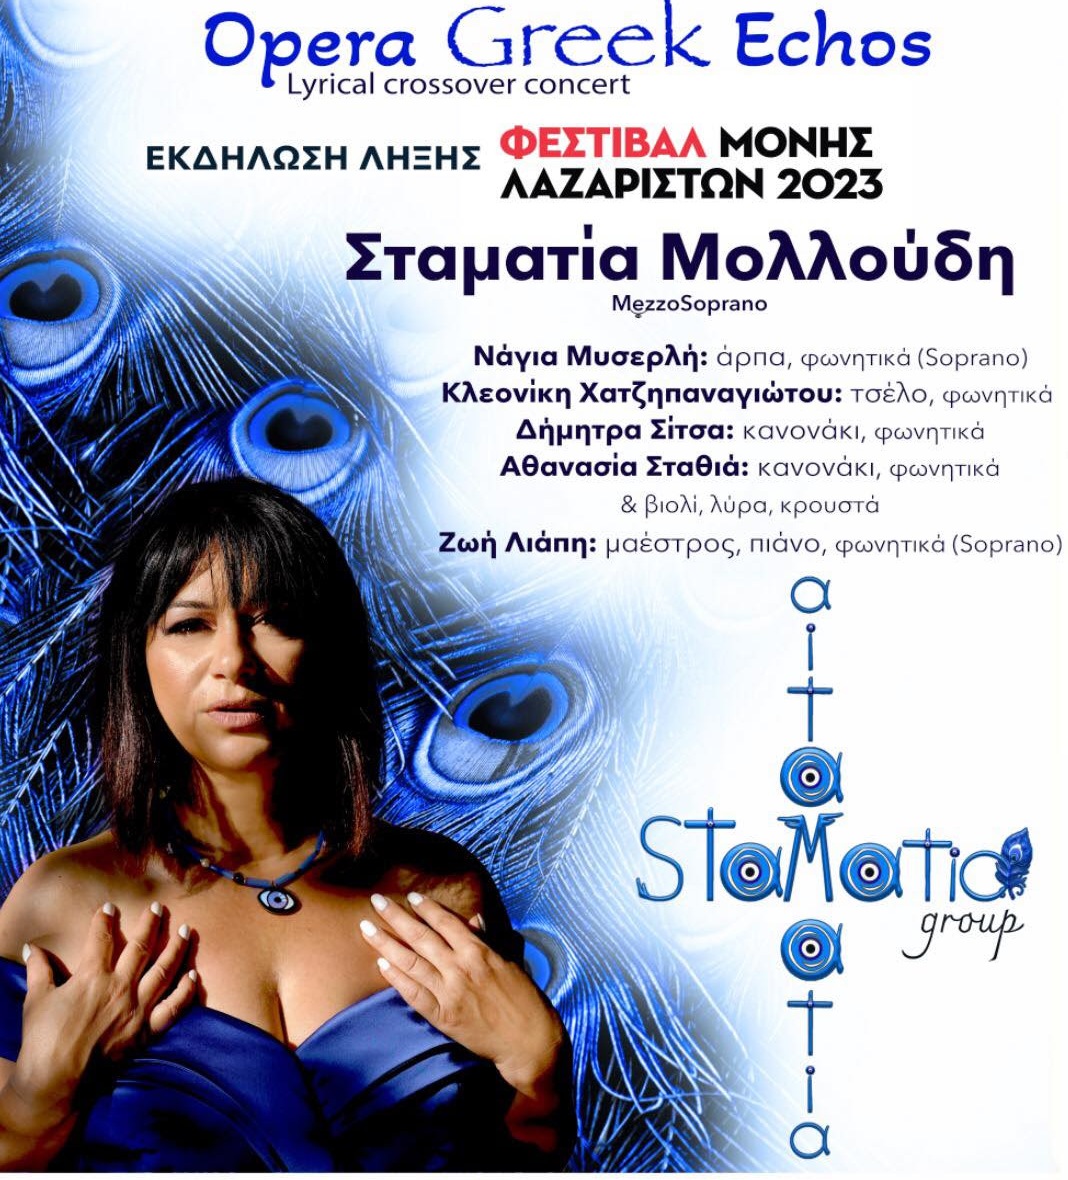 Εκδήλωση λήξης του Φεστιβάλ Μονής Λαζαριστών με την «Opera Greek Echos»